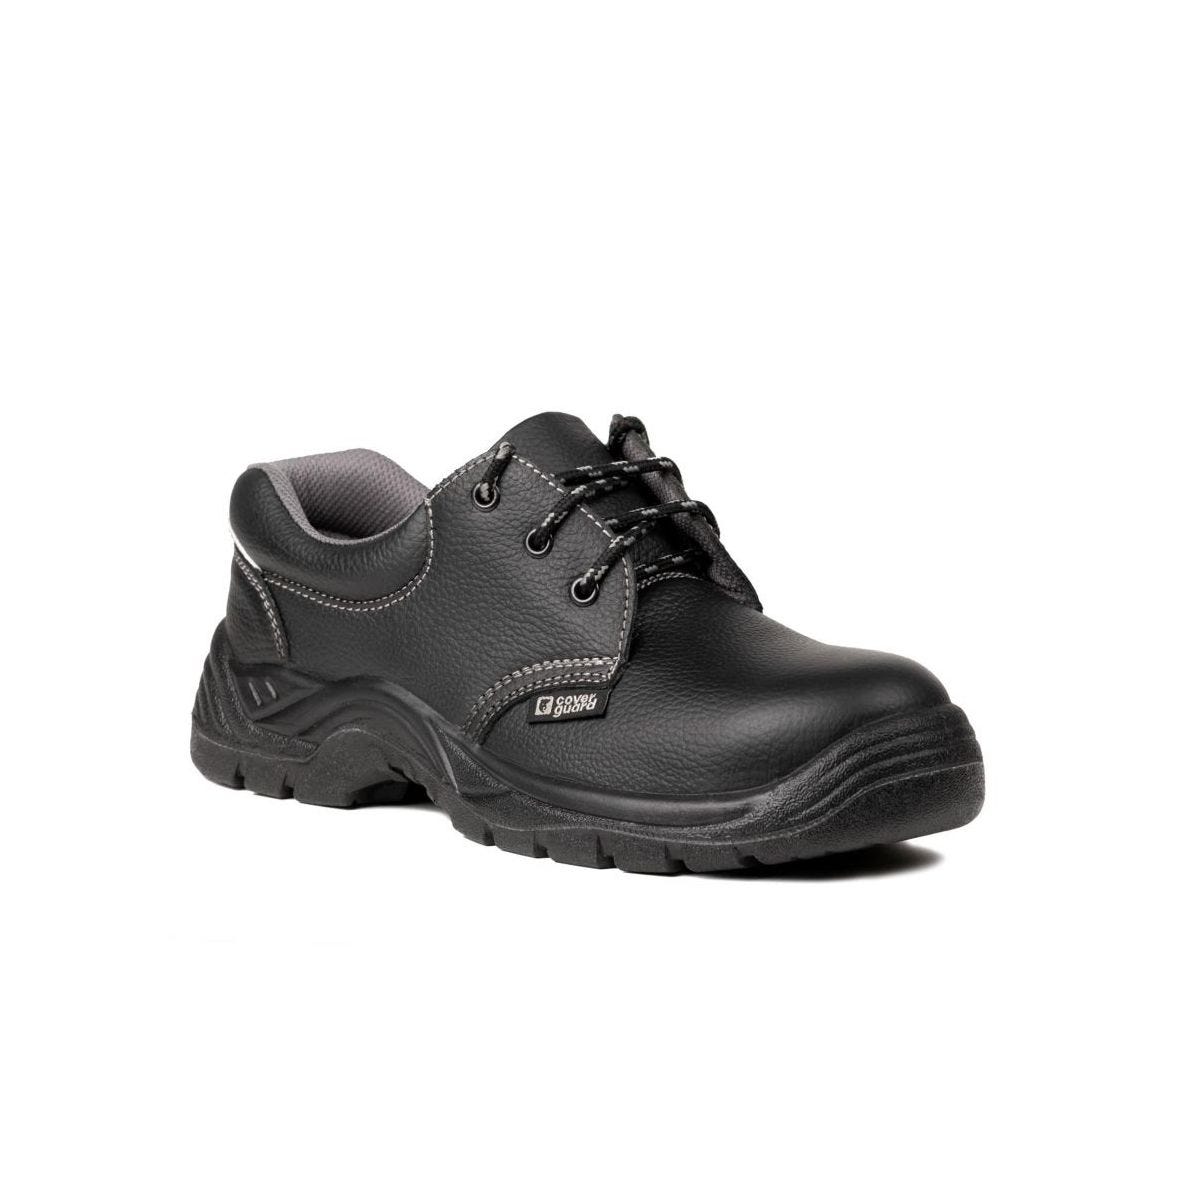 Chaussures de sécurité basses AGATE II S3 Noir - Coverguard - Taille 45 0